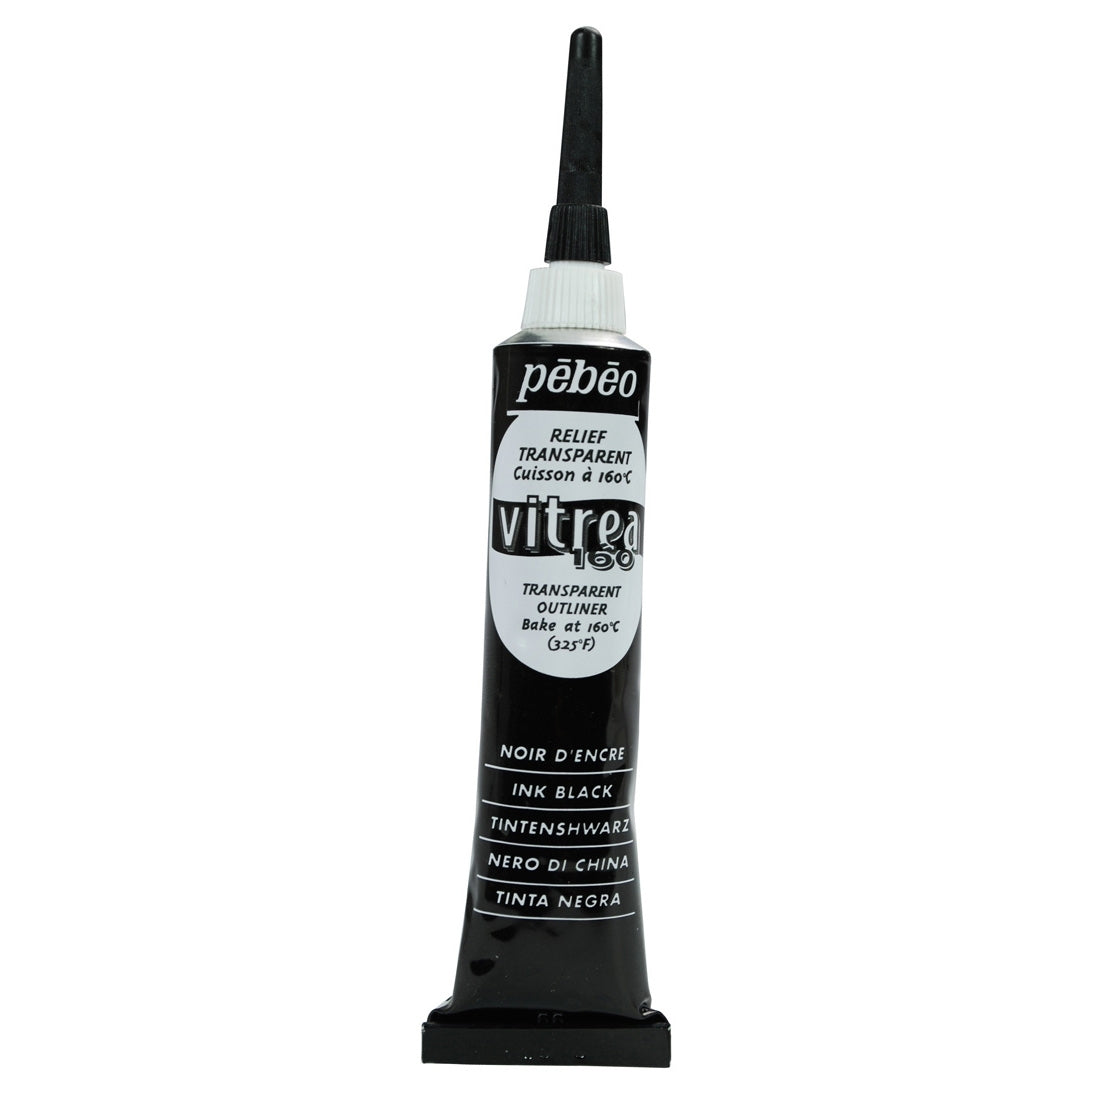 Pebeo - vitrea 160 - Verre et carreau de peinture - Gloss Outliner - Ink Black 20ml